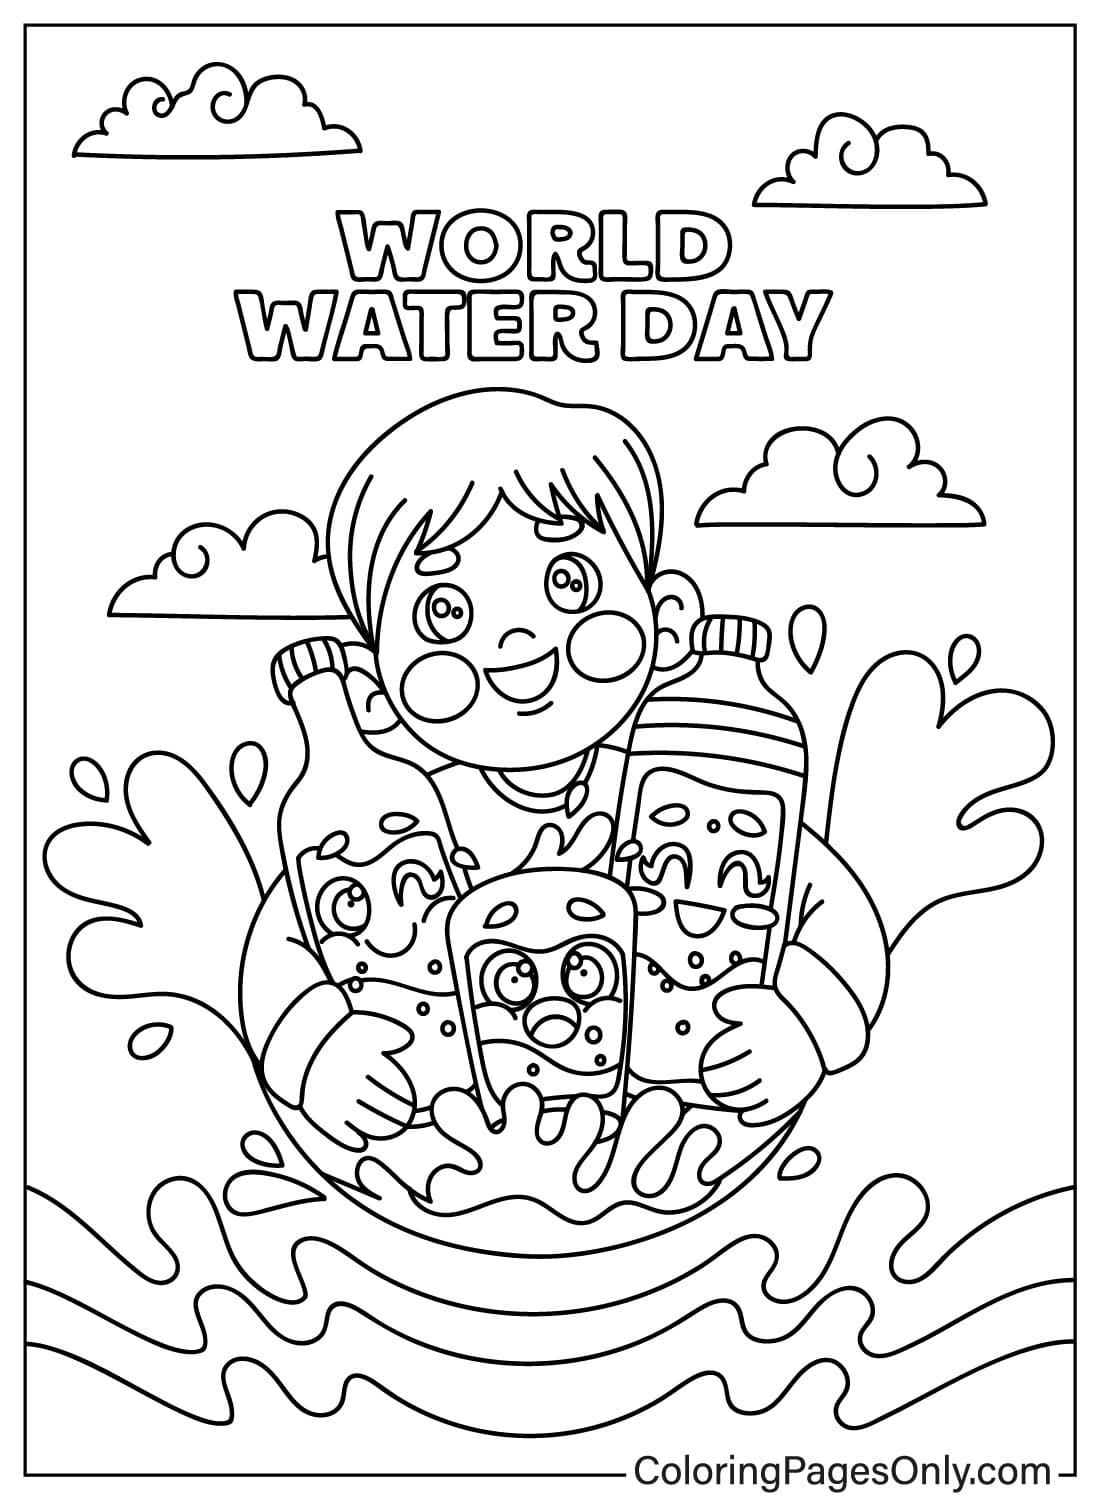 Página para colorear del Día Mundial del Agua y los niños del Día Mundial del Agua